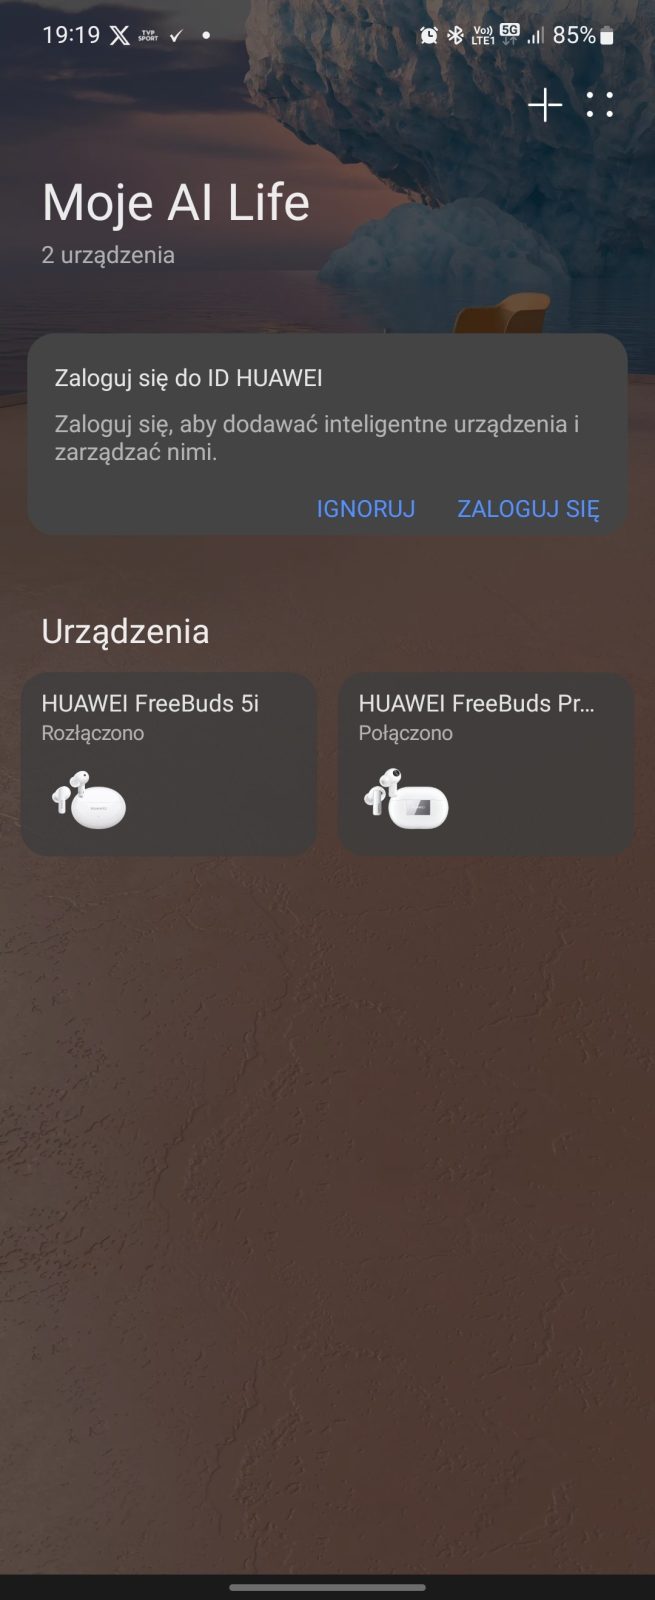 Recenzja Huawei Freebuds Pro 3. Po prostu rewelacyjne!